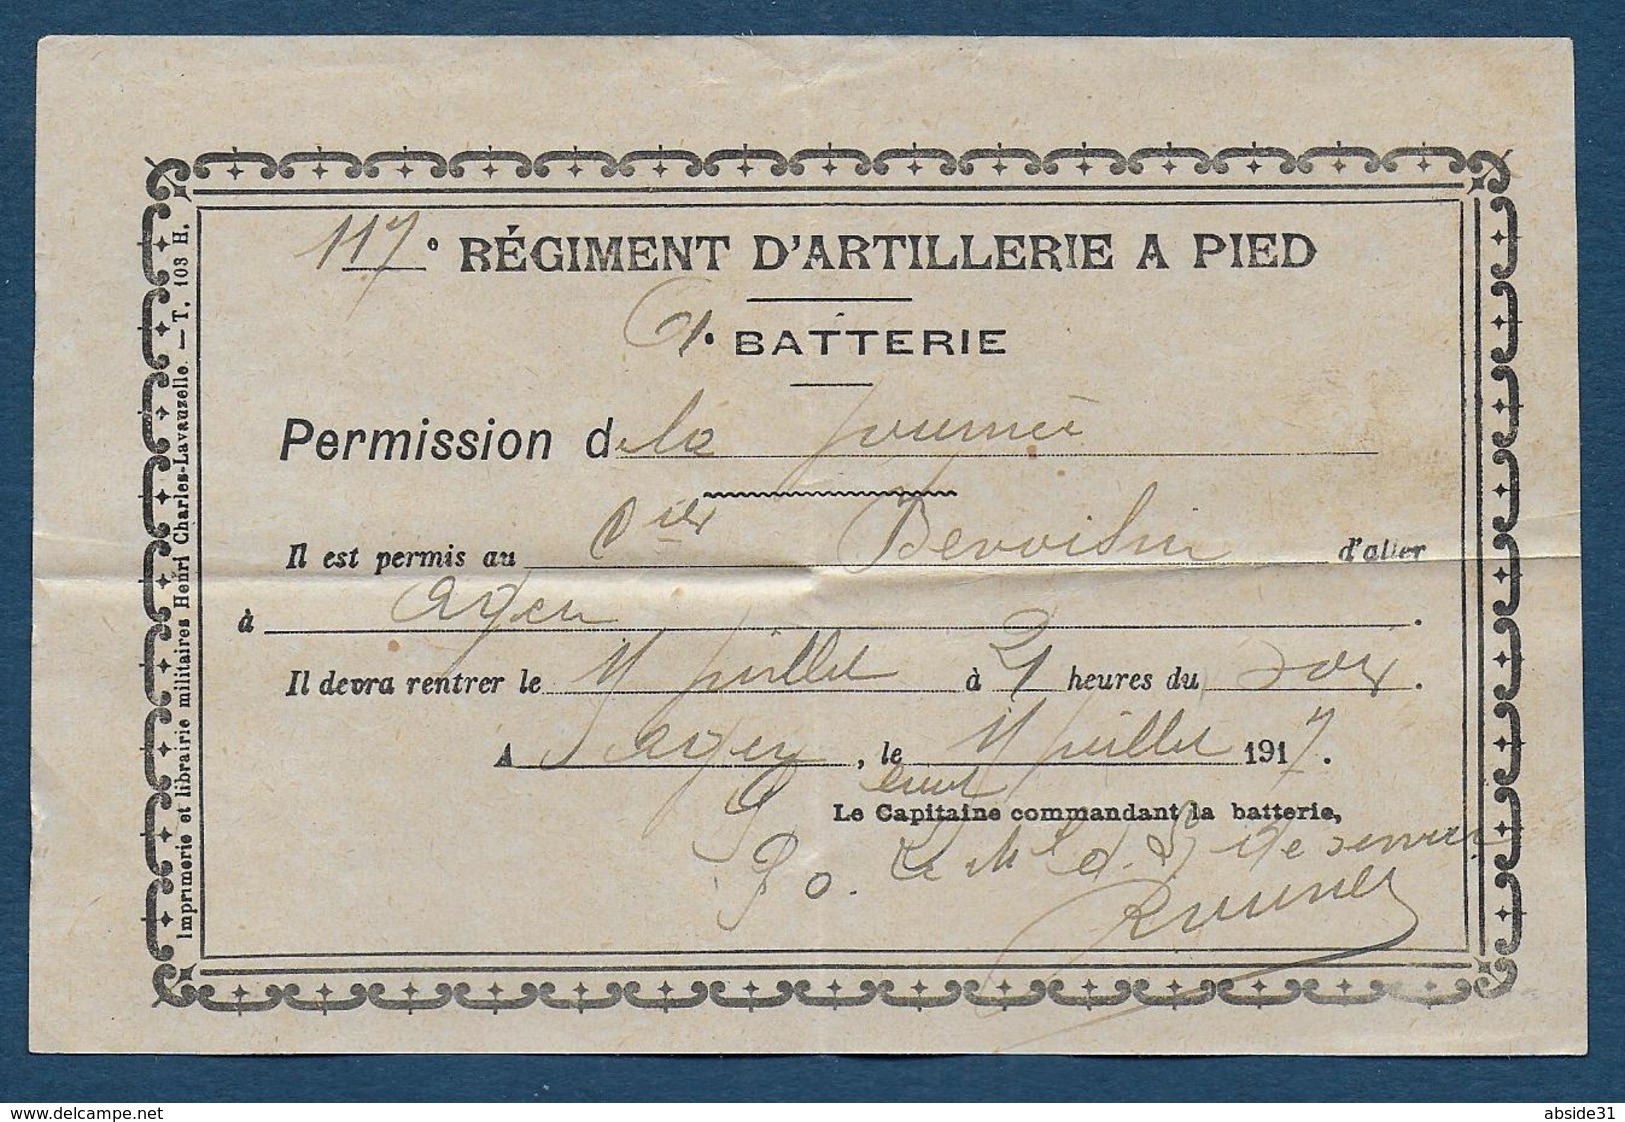 AGEN -  117e Régiment D'Artillerie à Pied - Permission De La Journée  1917 - Documenti